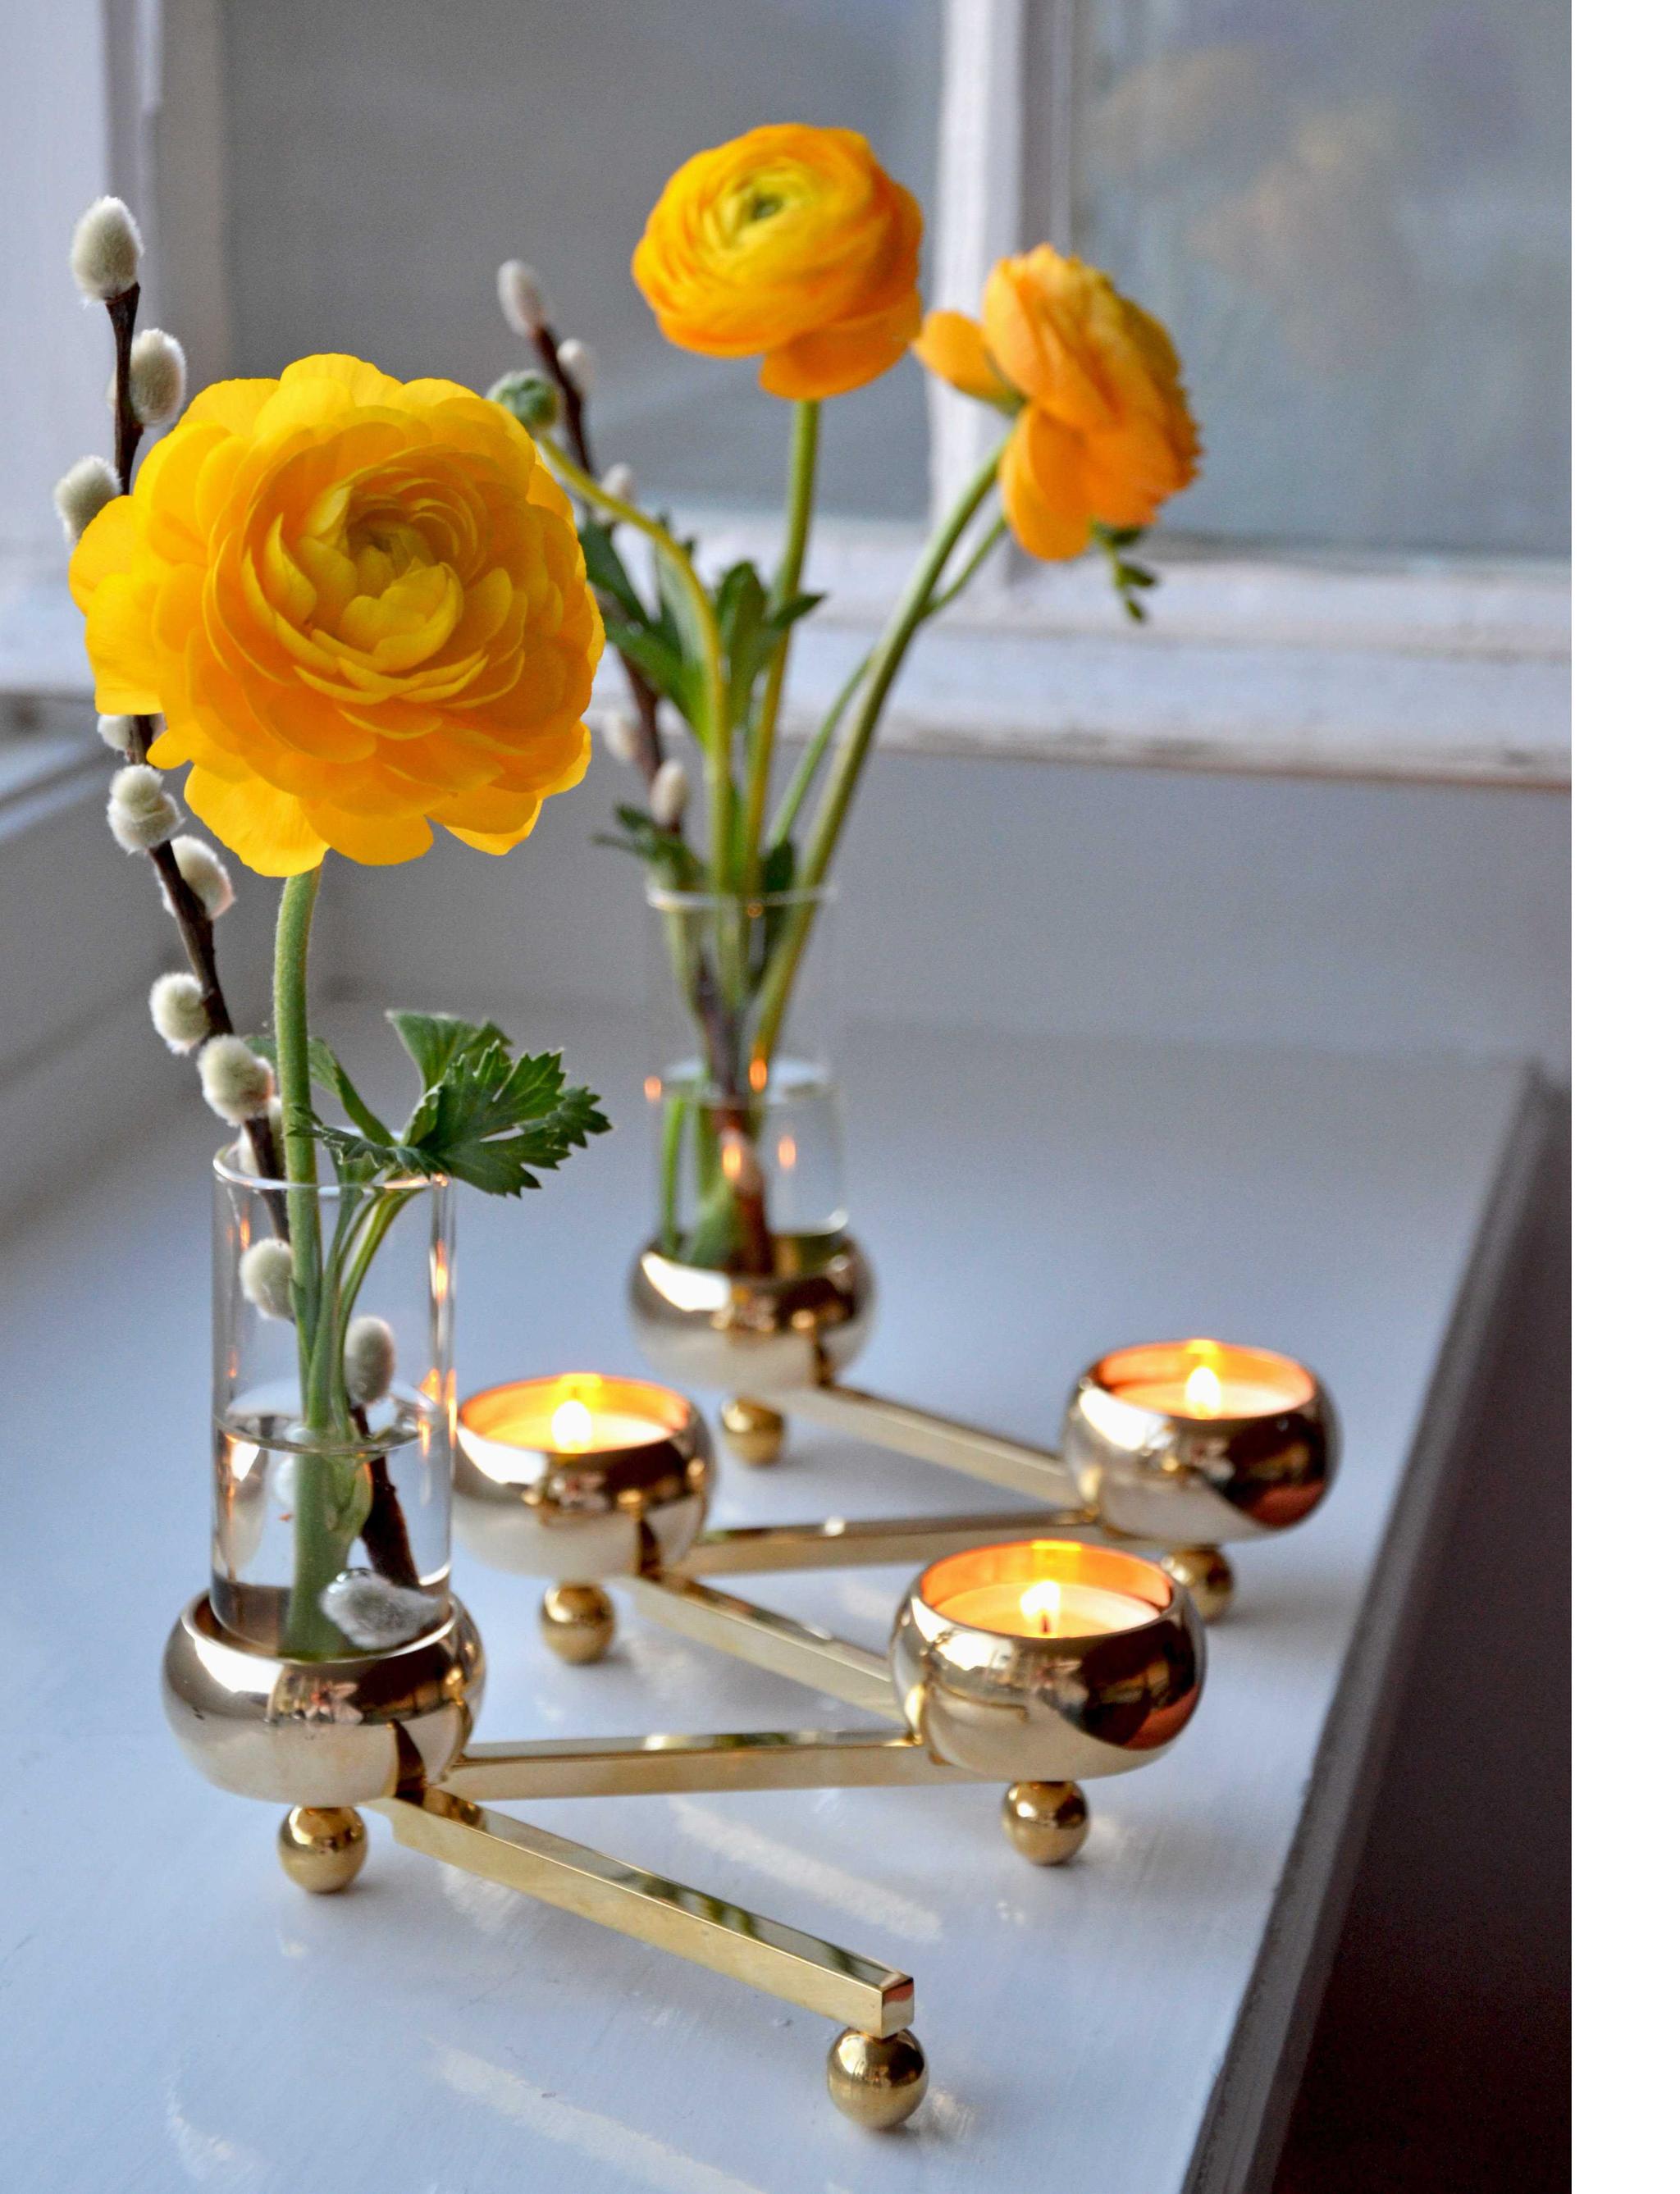 Klong constella kynttilänjalka maljakko kukat lämpökynttilät sisustusvinkit